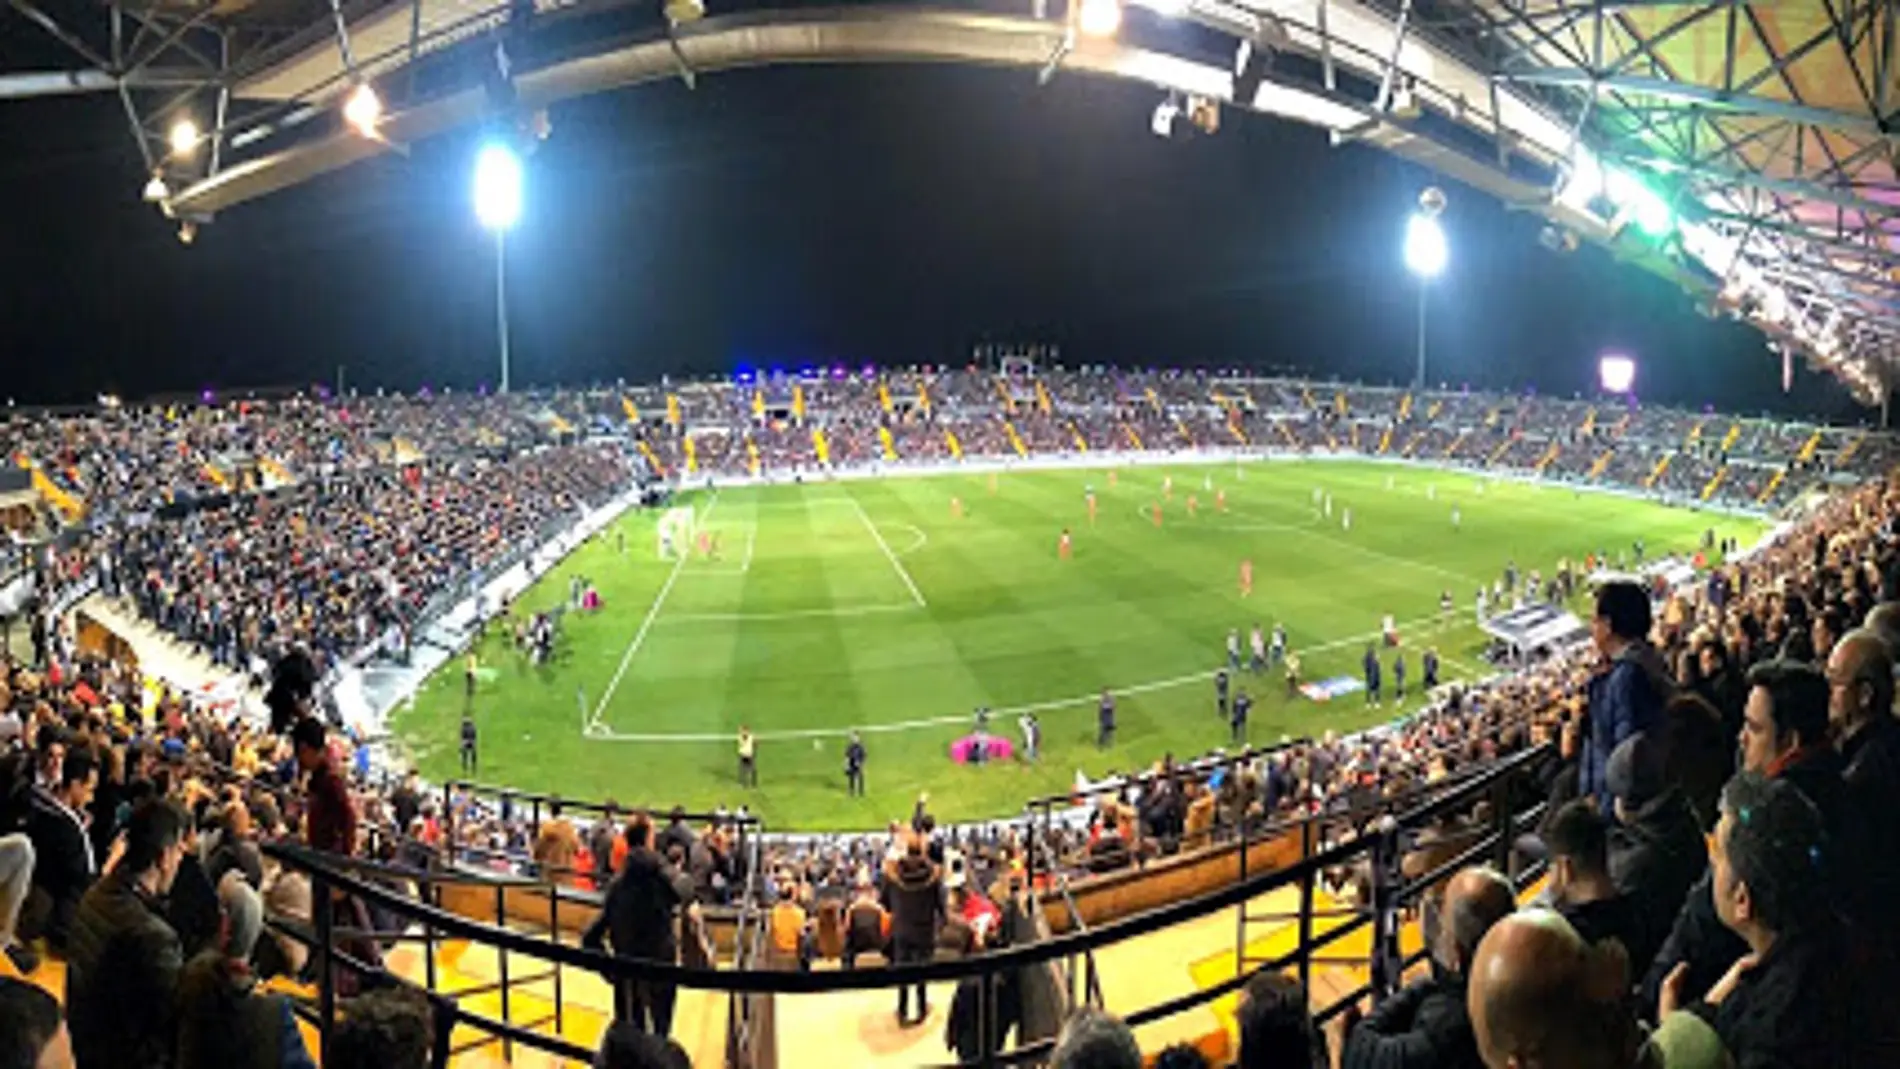 EL nuevo Vivero será uno de los 4 estadios extremeños que acogerá los partidos del Play Off de Ascenso a Segunda División